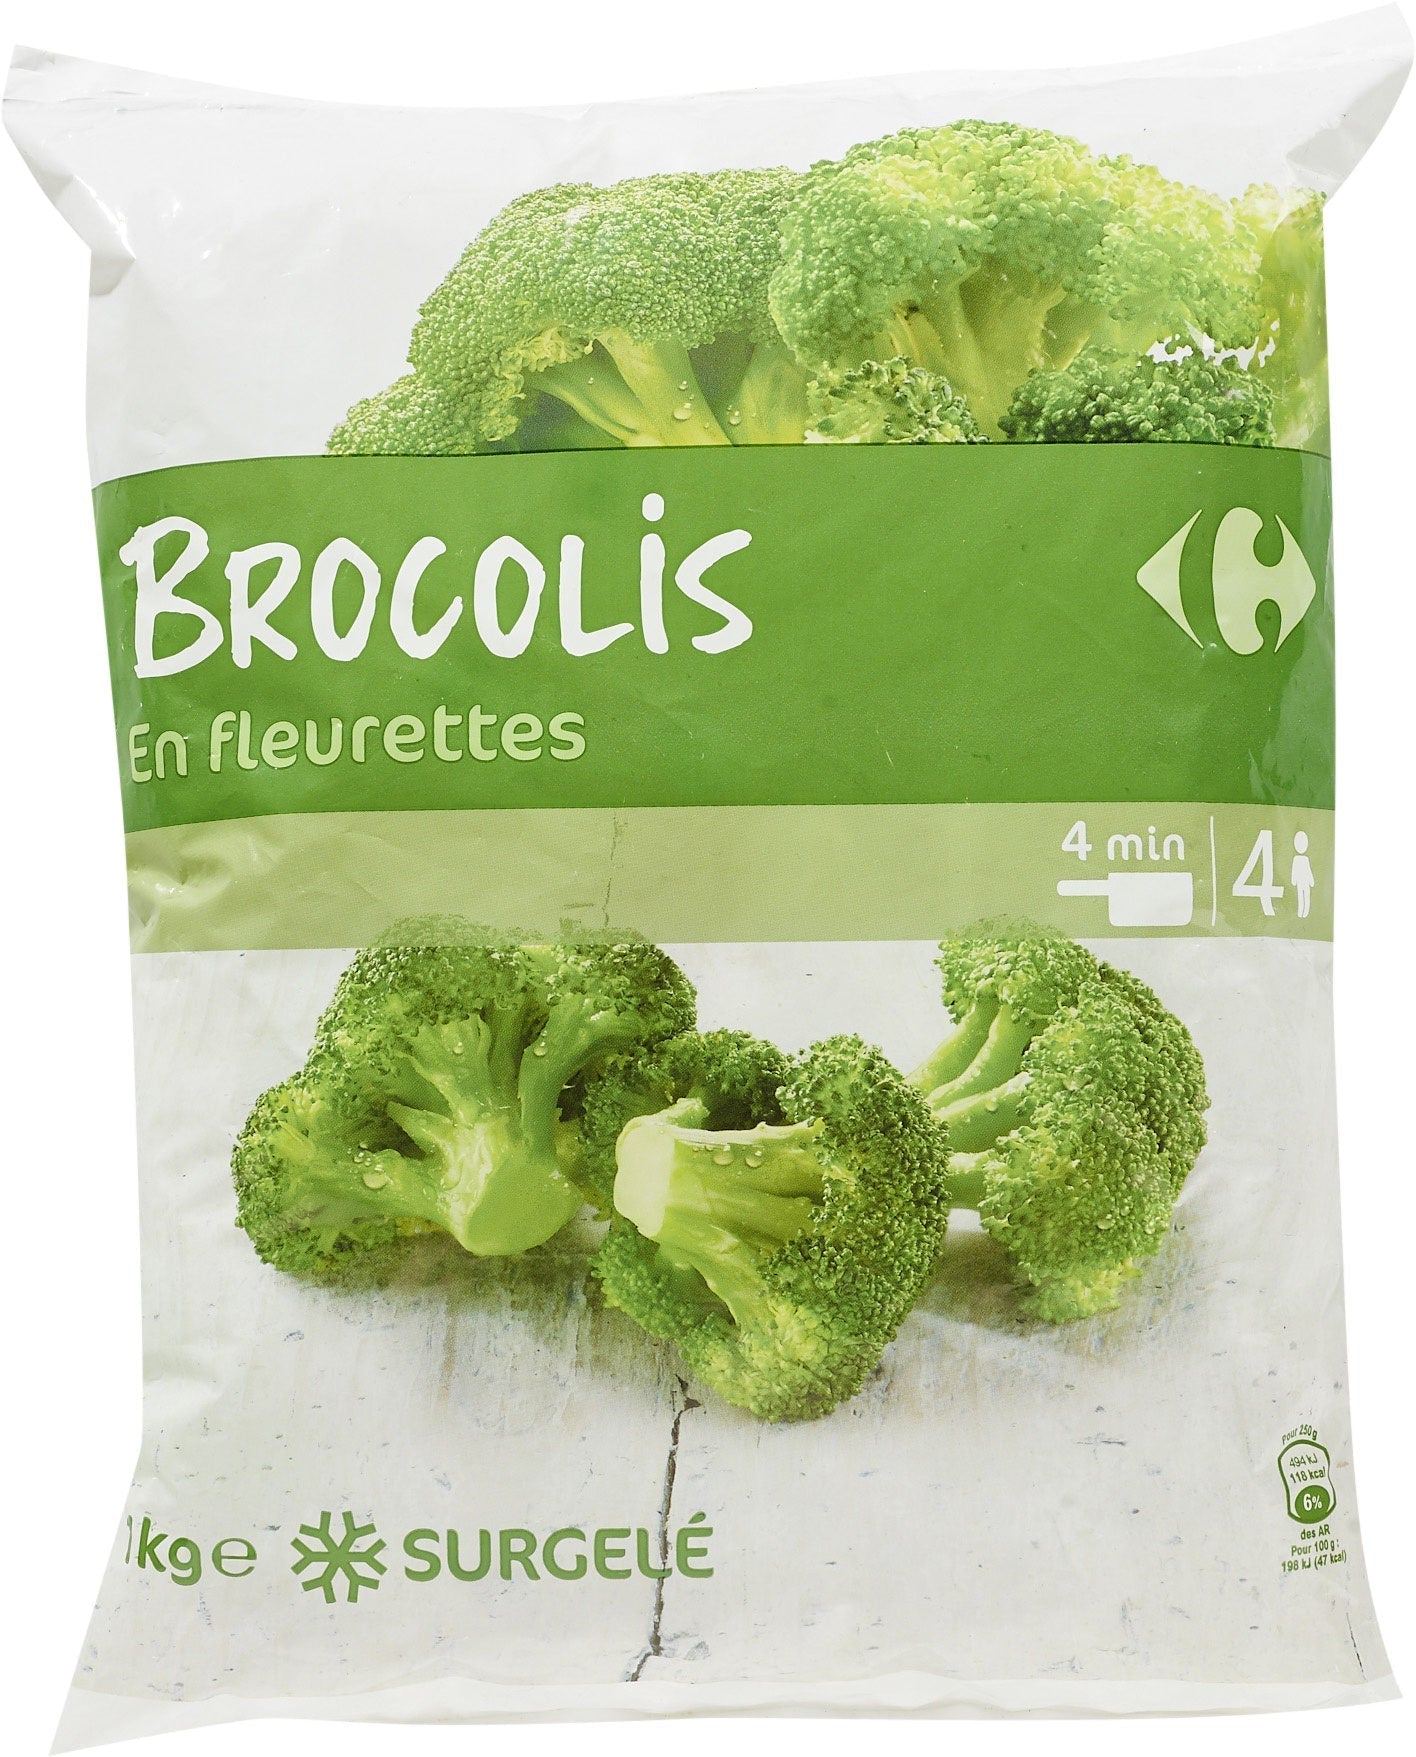 stm>Broccolli, Carrefour 1kg, frozen